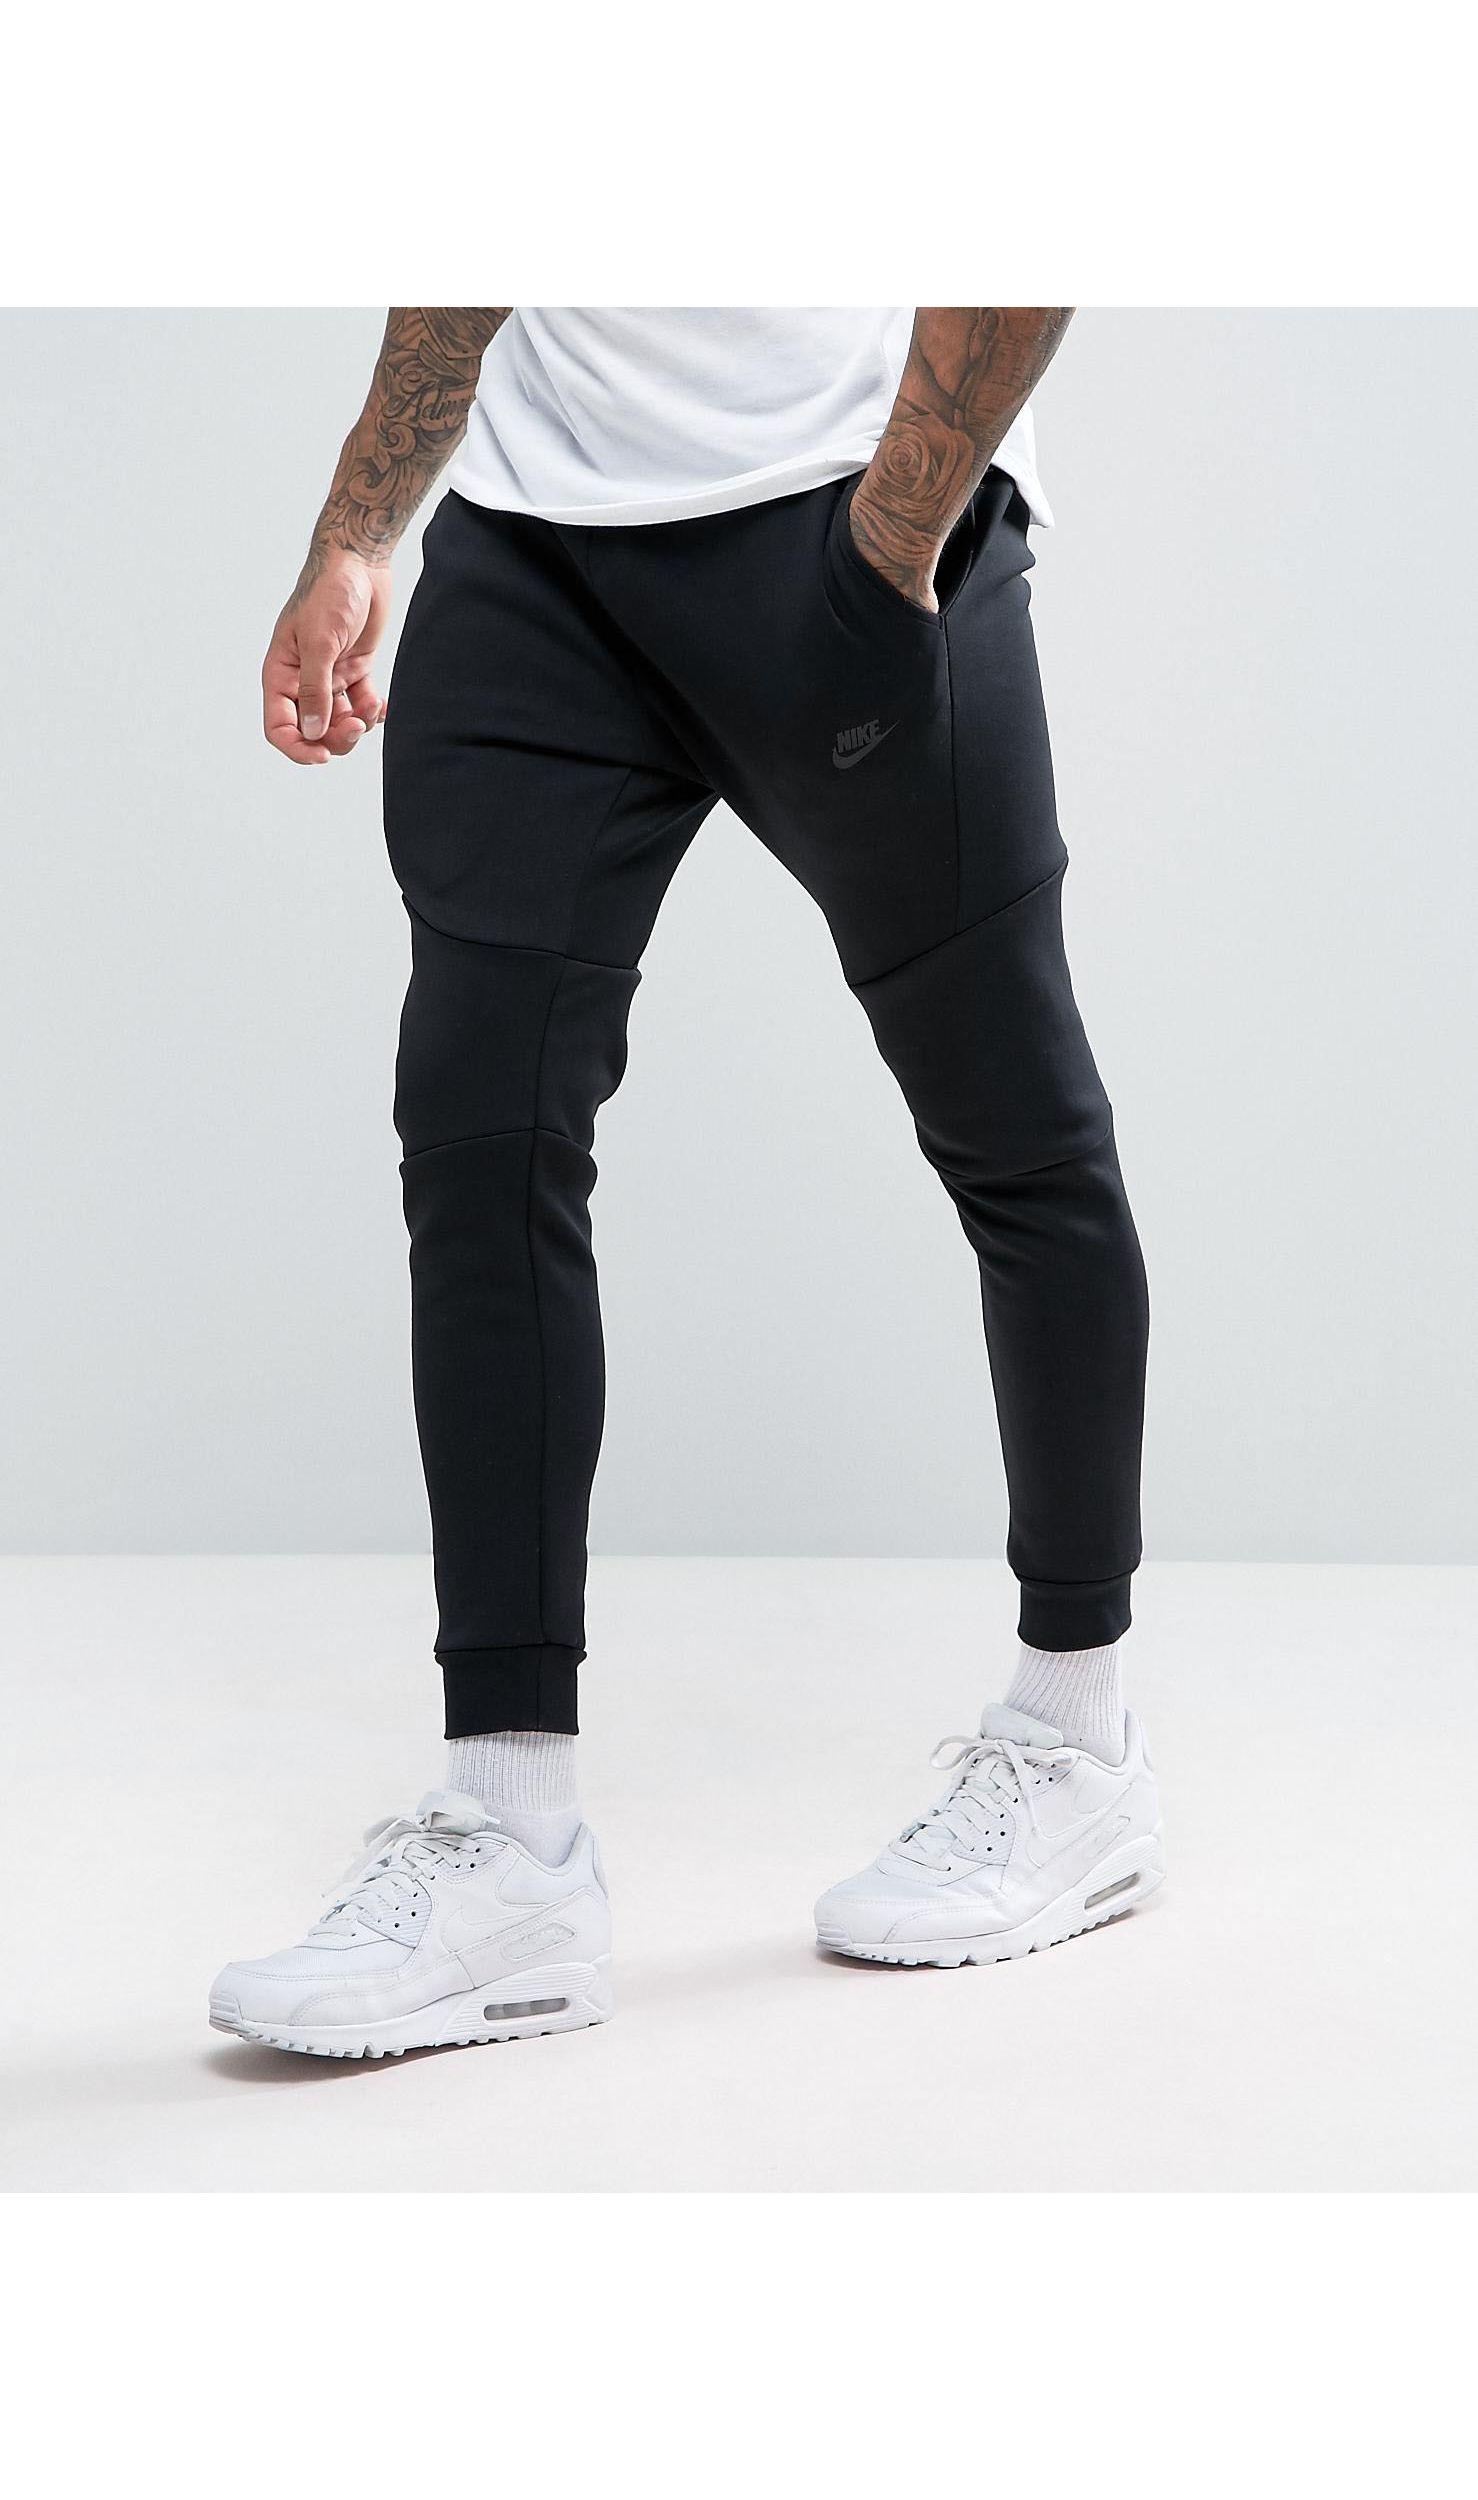 Nike Slim Fit Jogging Bottoms Clearance, GET 59% OFF, sportsregras.com